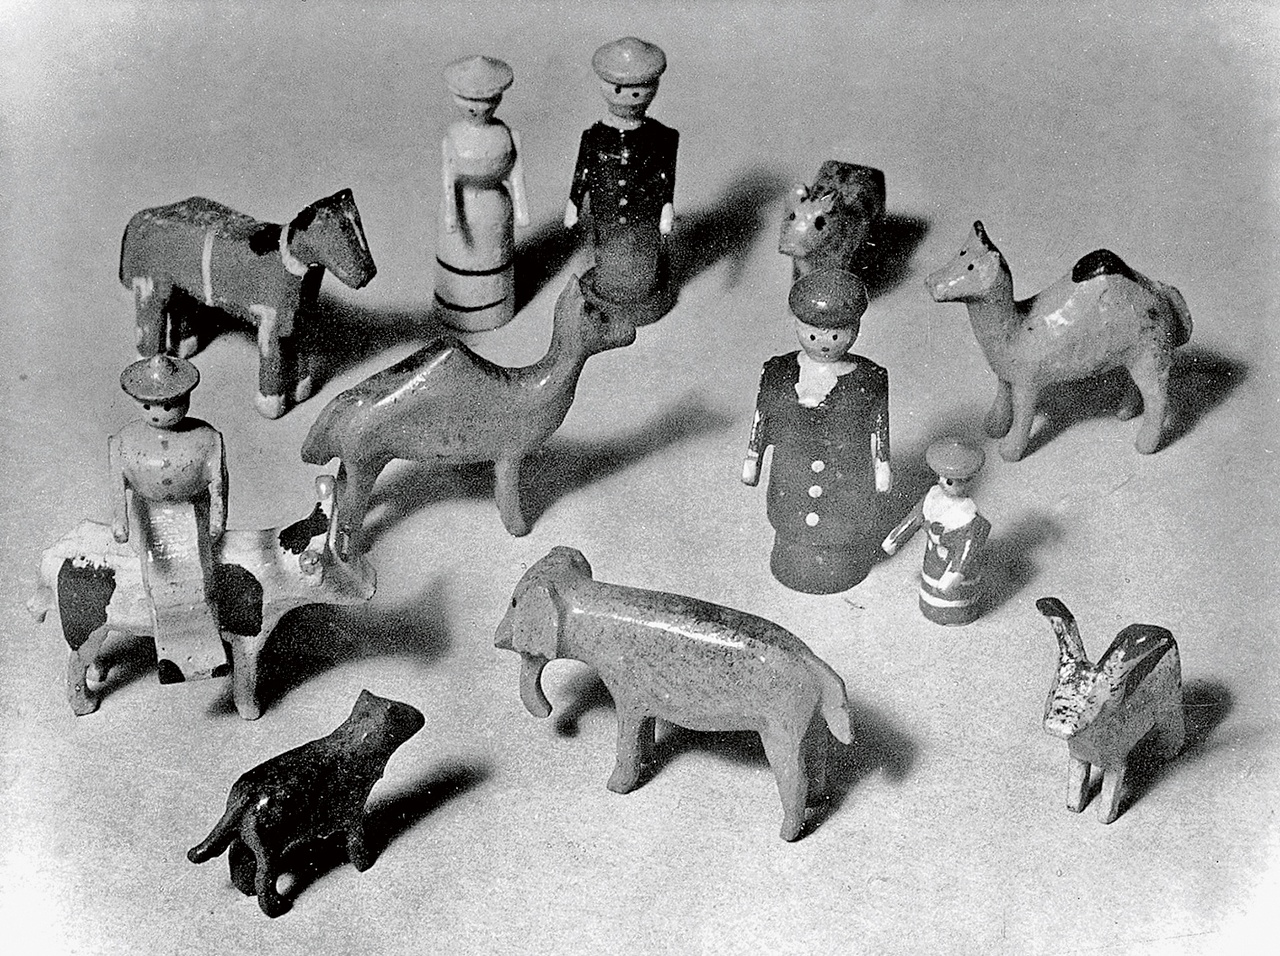 Toys used by Melanie Klein / von Melanie Klein genutztes Spielzeug